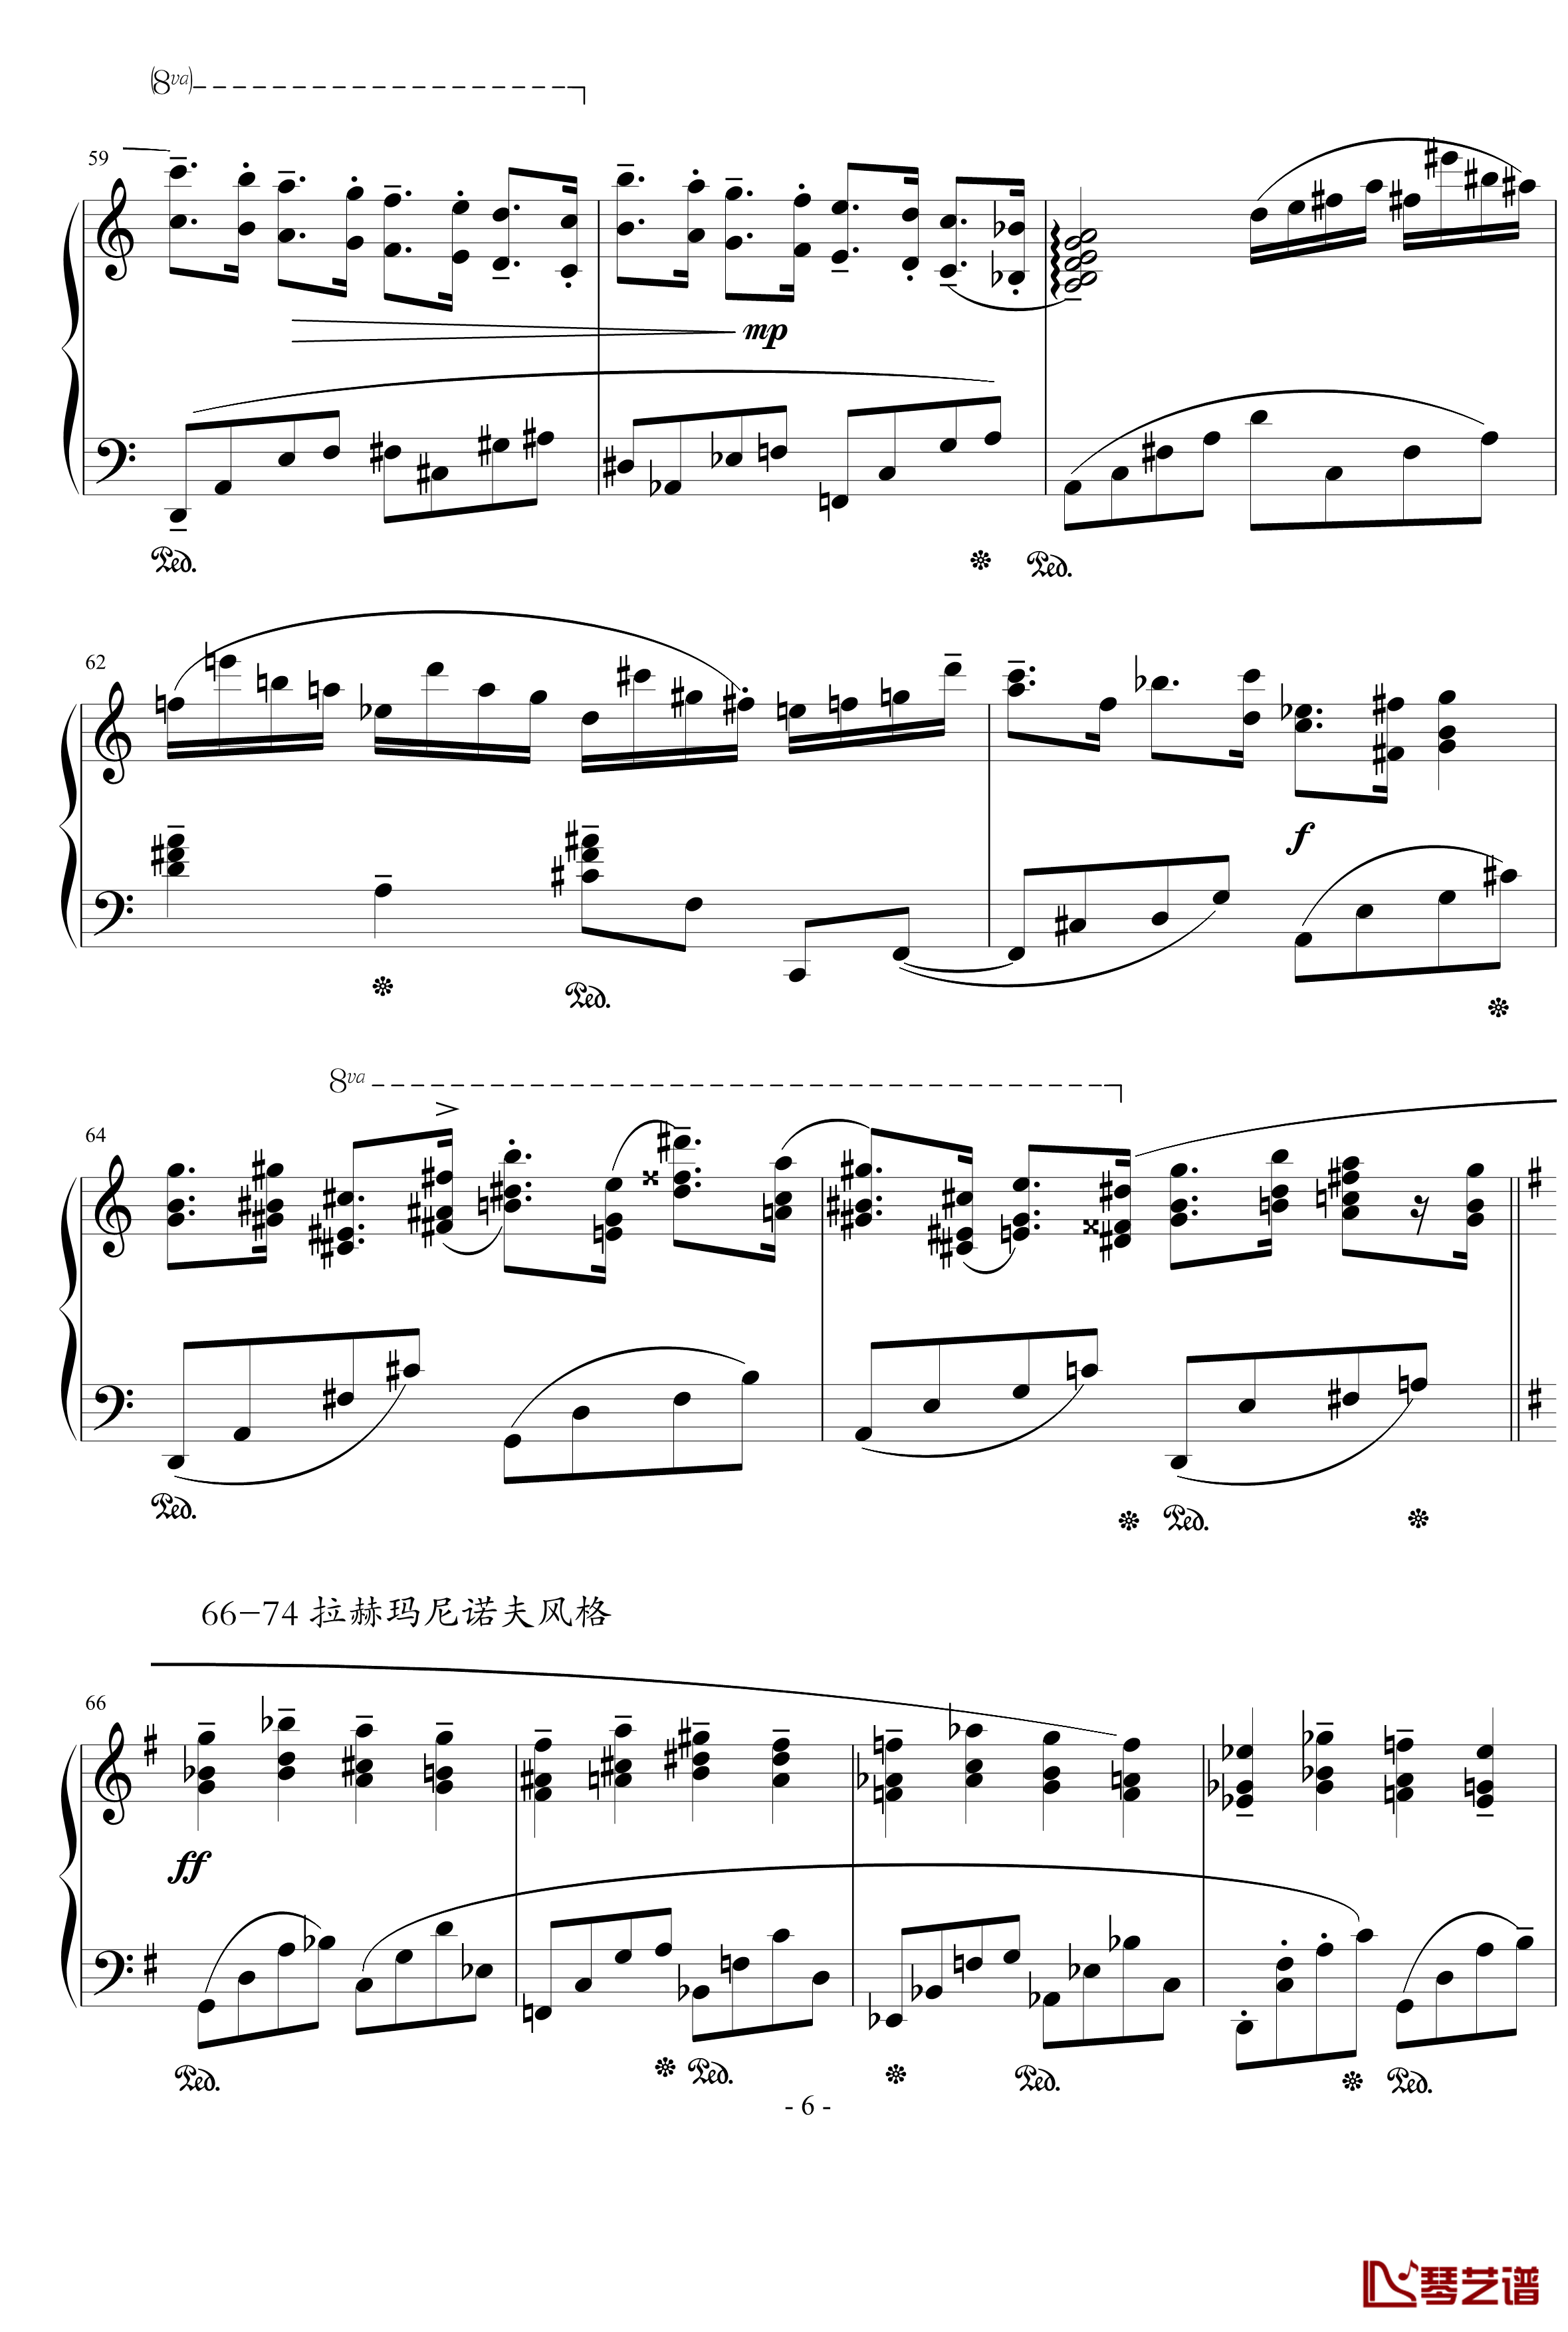  蒙太奇阐释集 钢琴谱-5-流行追梦人6